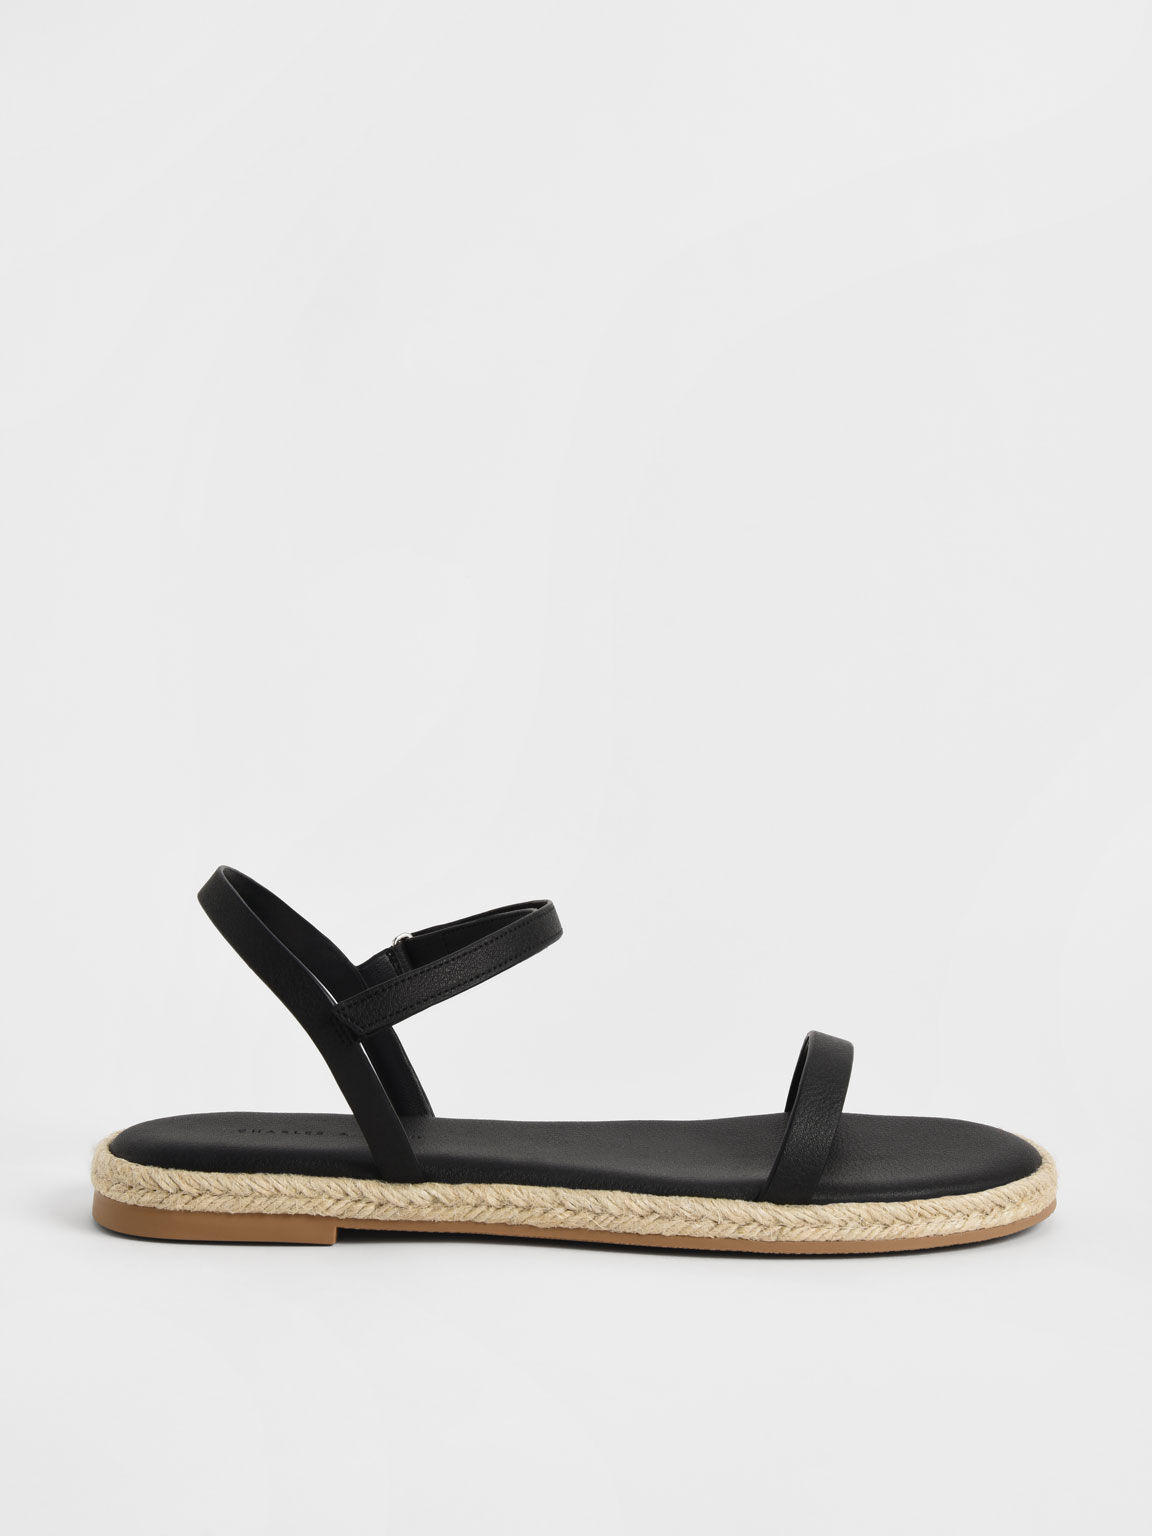 Sandal Flat Espadrille Ankle-Strap, Black, hi-res